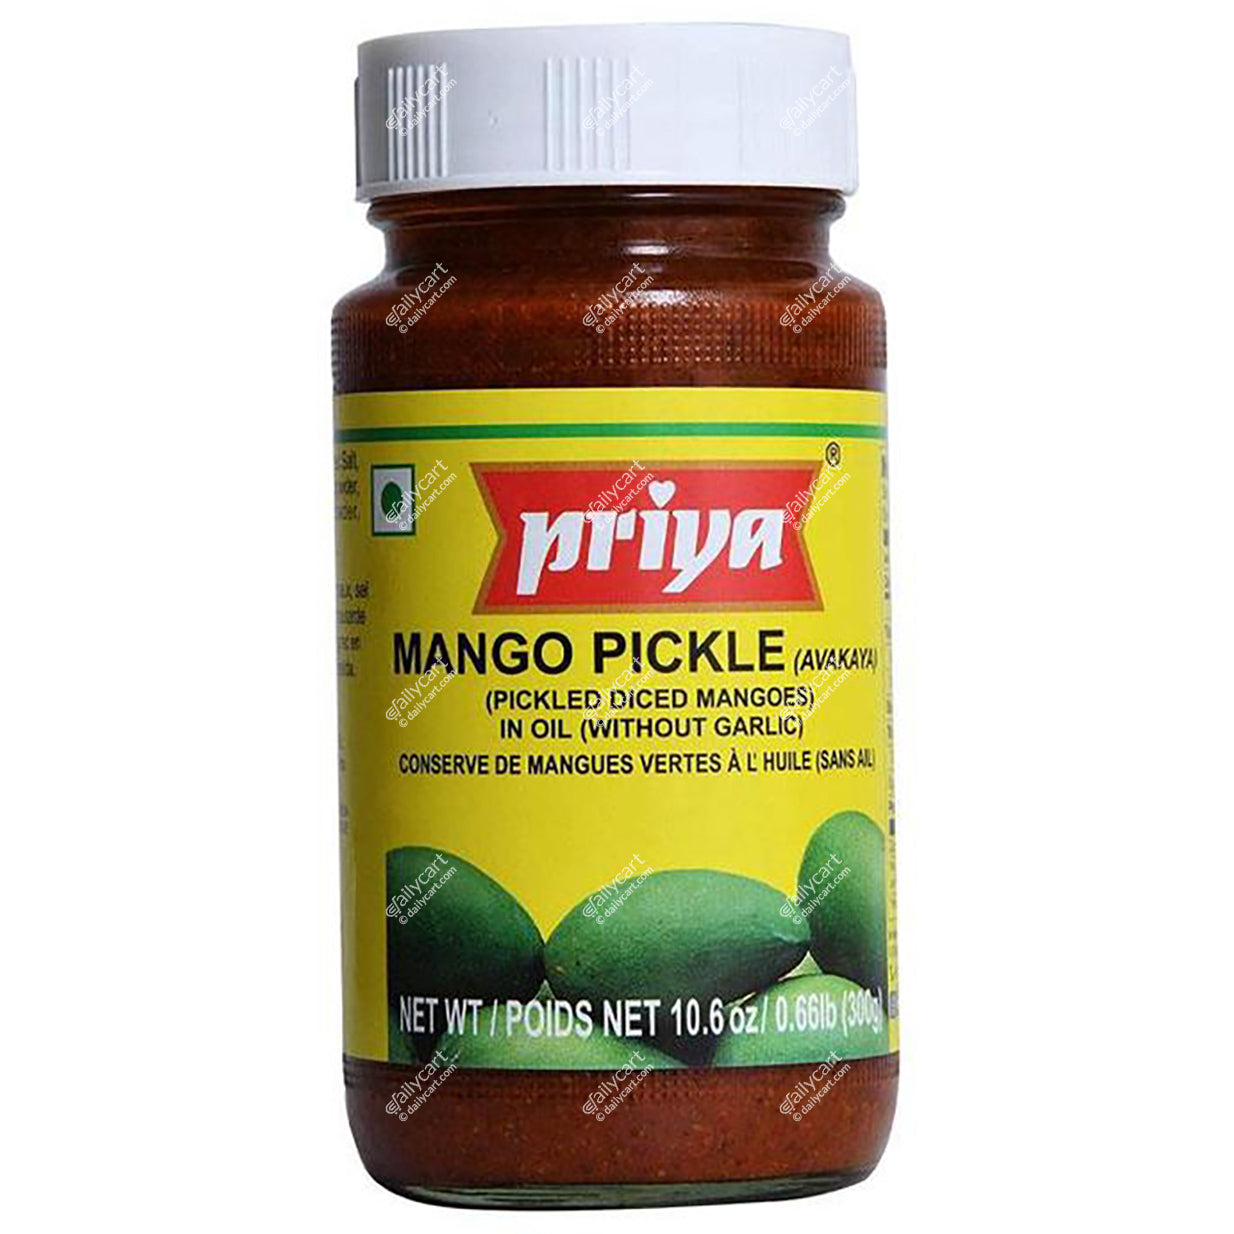 Priya Mango Pickle (Avakaya) Without Garlic, 300 g